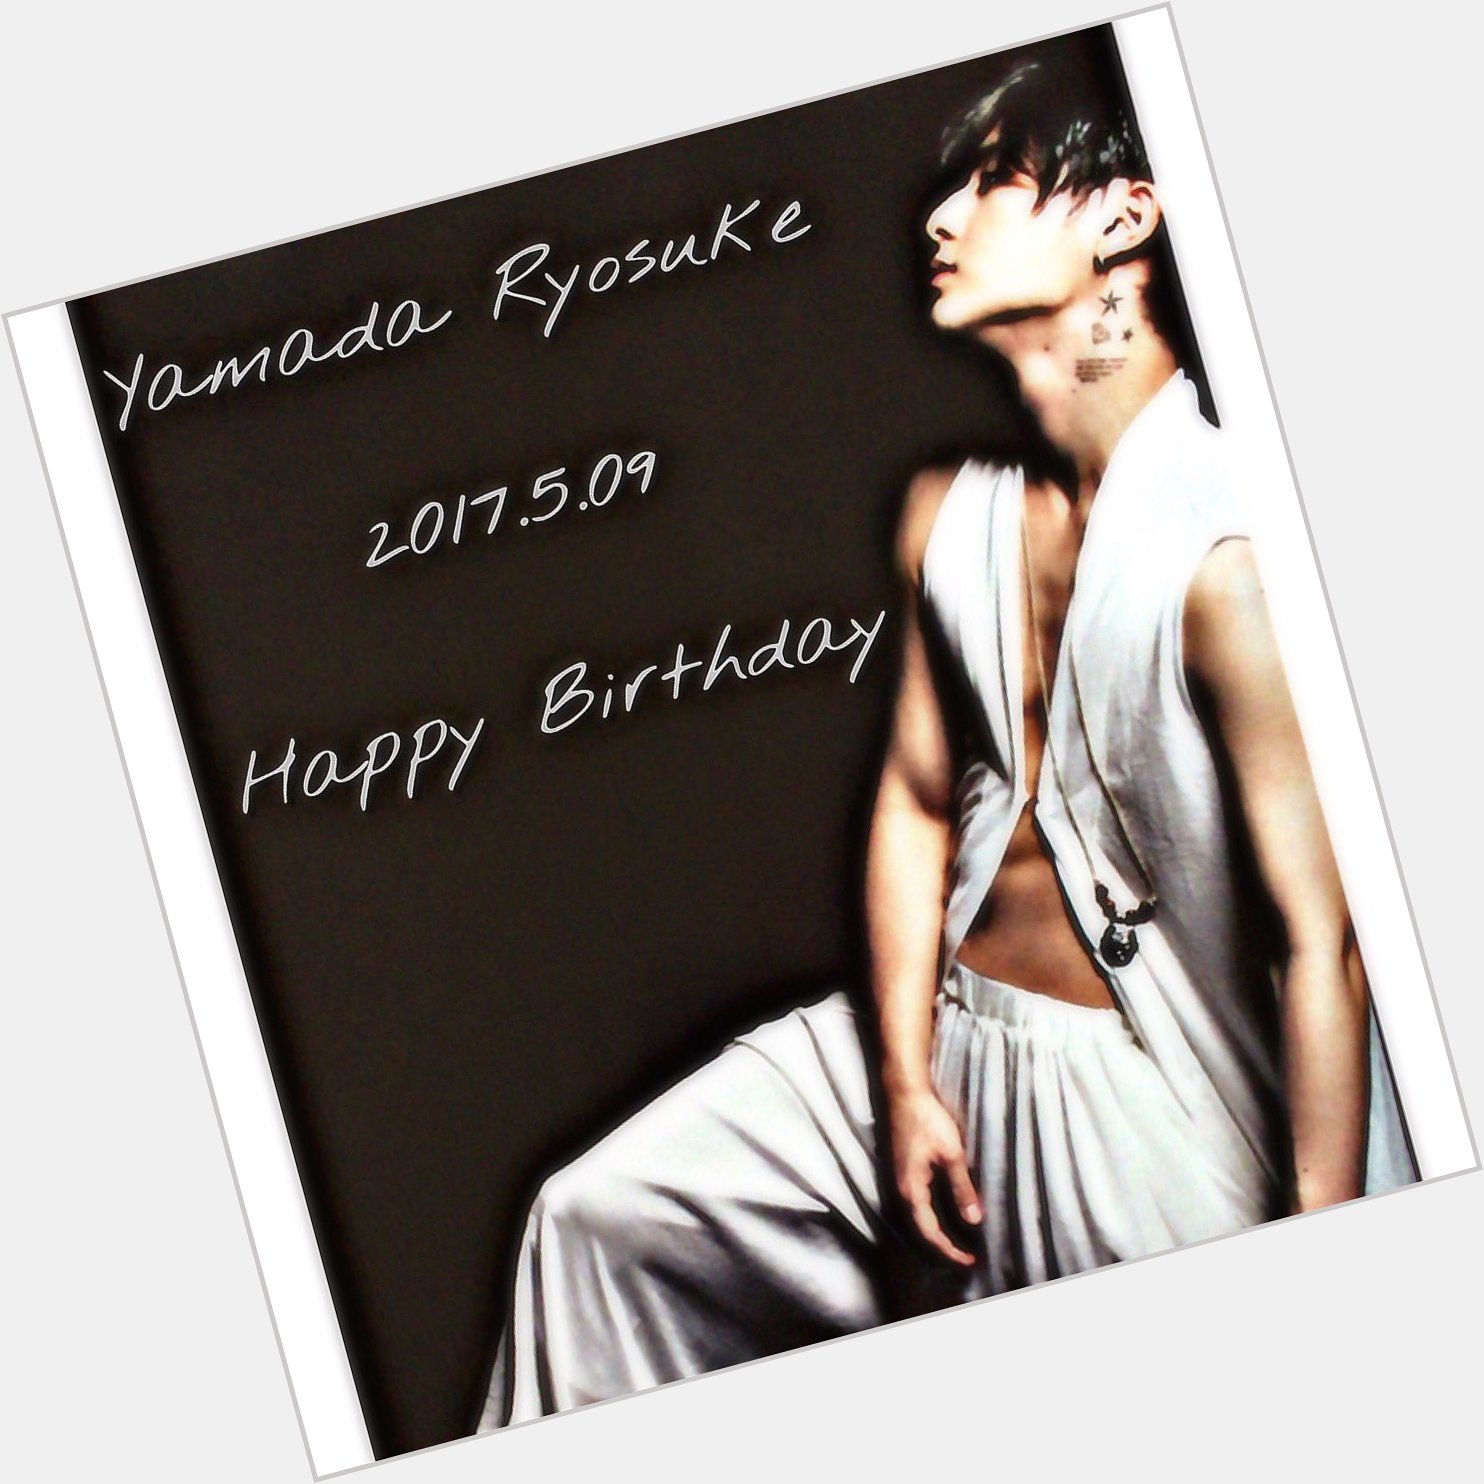 Yamada Ryosuke 5.09 Happy Birthday                                             